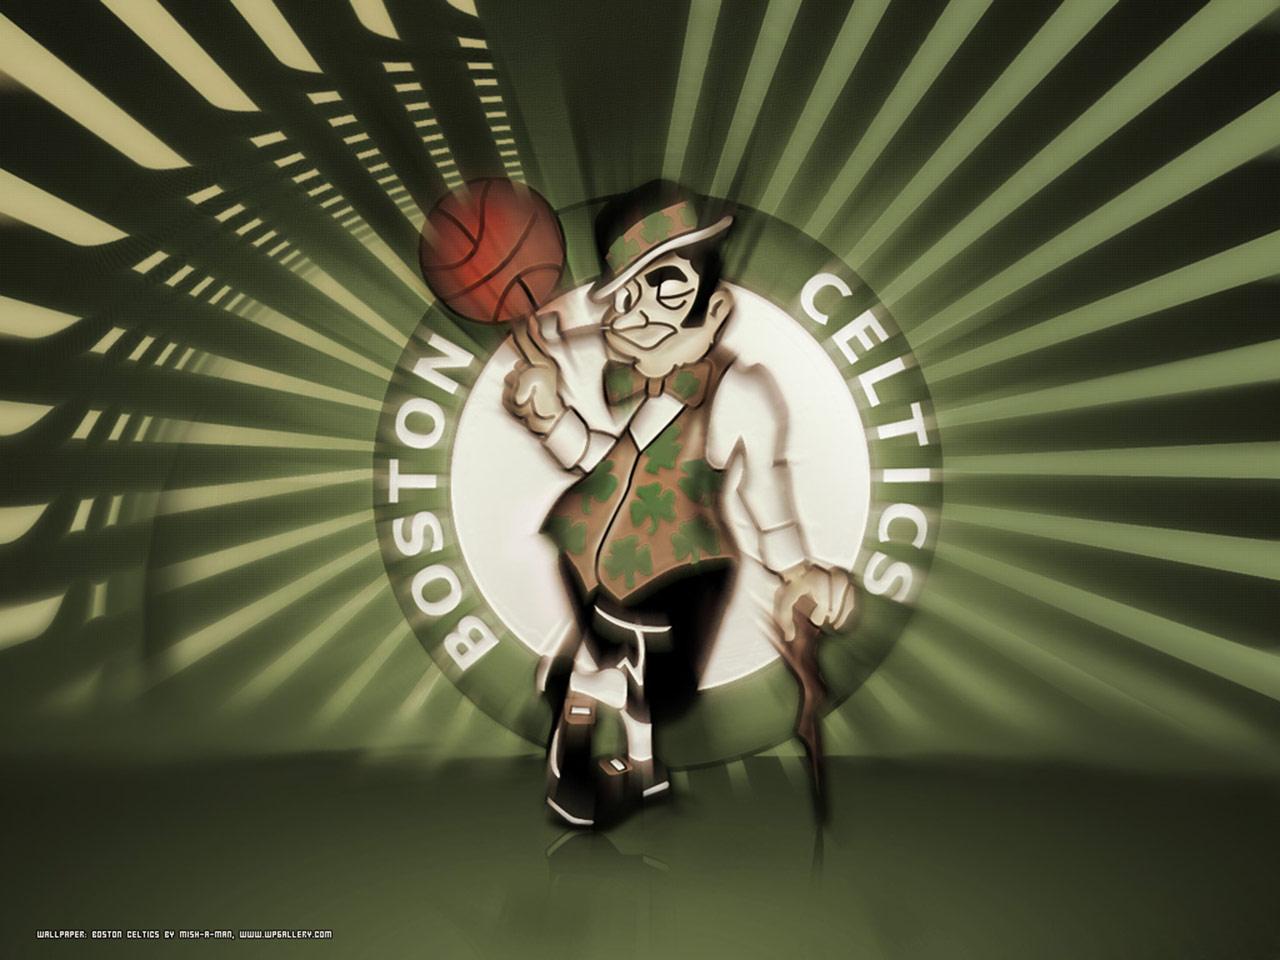 Boston Celtics Logo Wallpaper. Basketball Wallpaper at